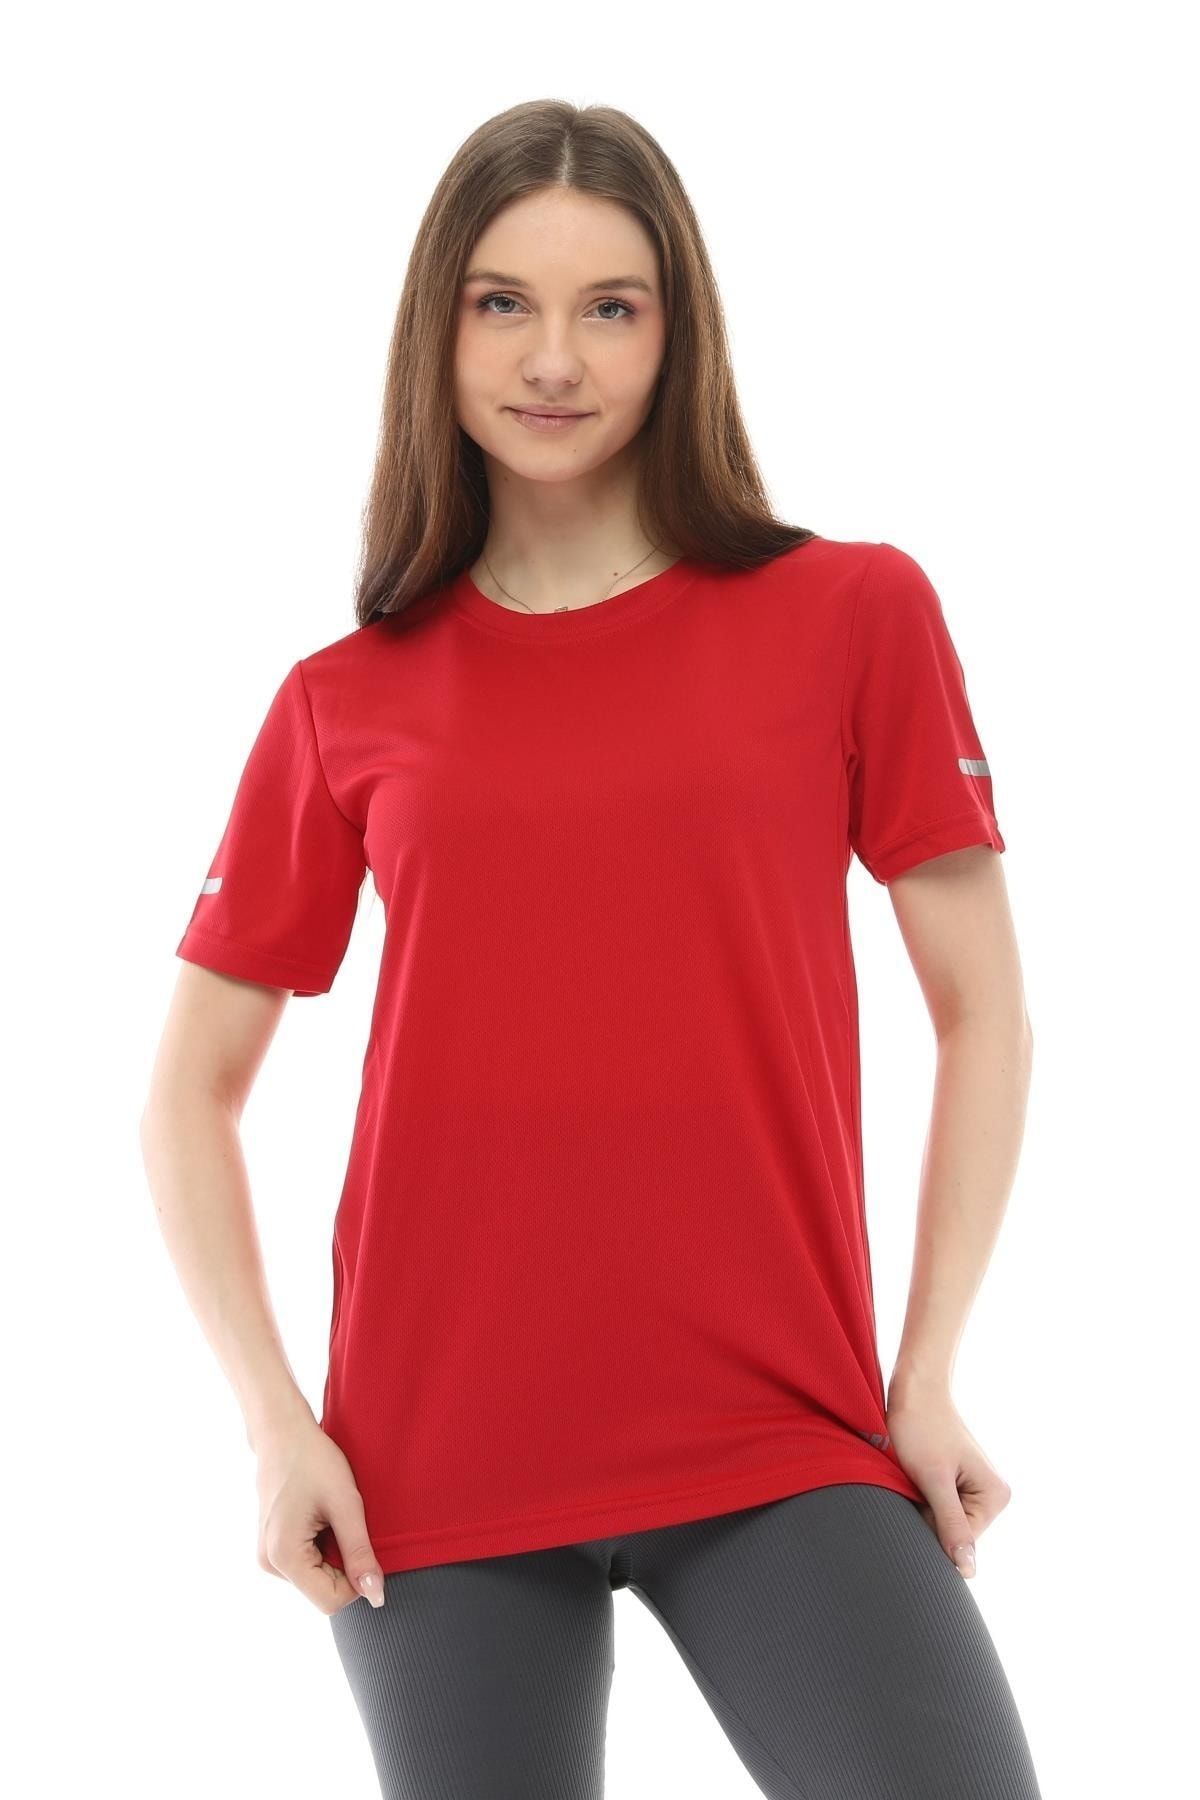 Ghassy Co Kadın Nem Emici Hızlı Kuruma Atletik Teknik Performans Spor T-shirt